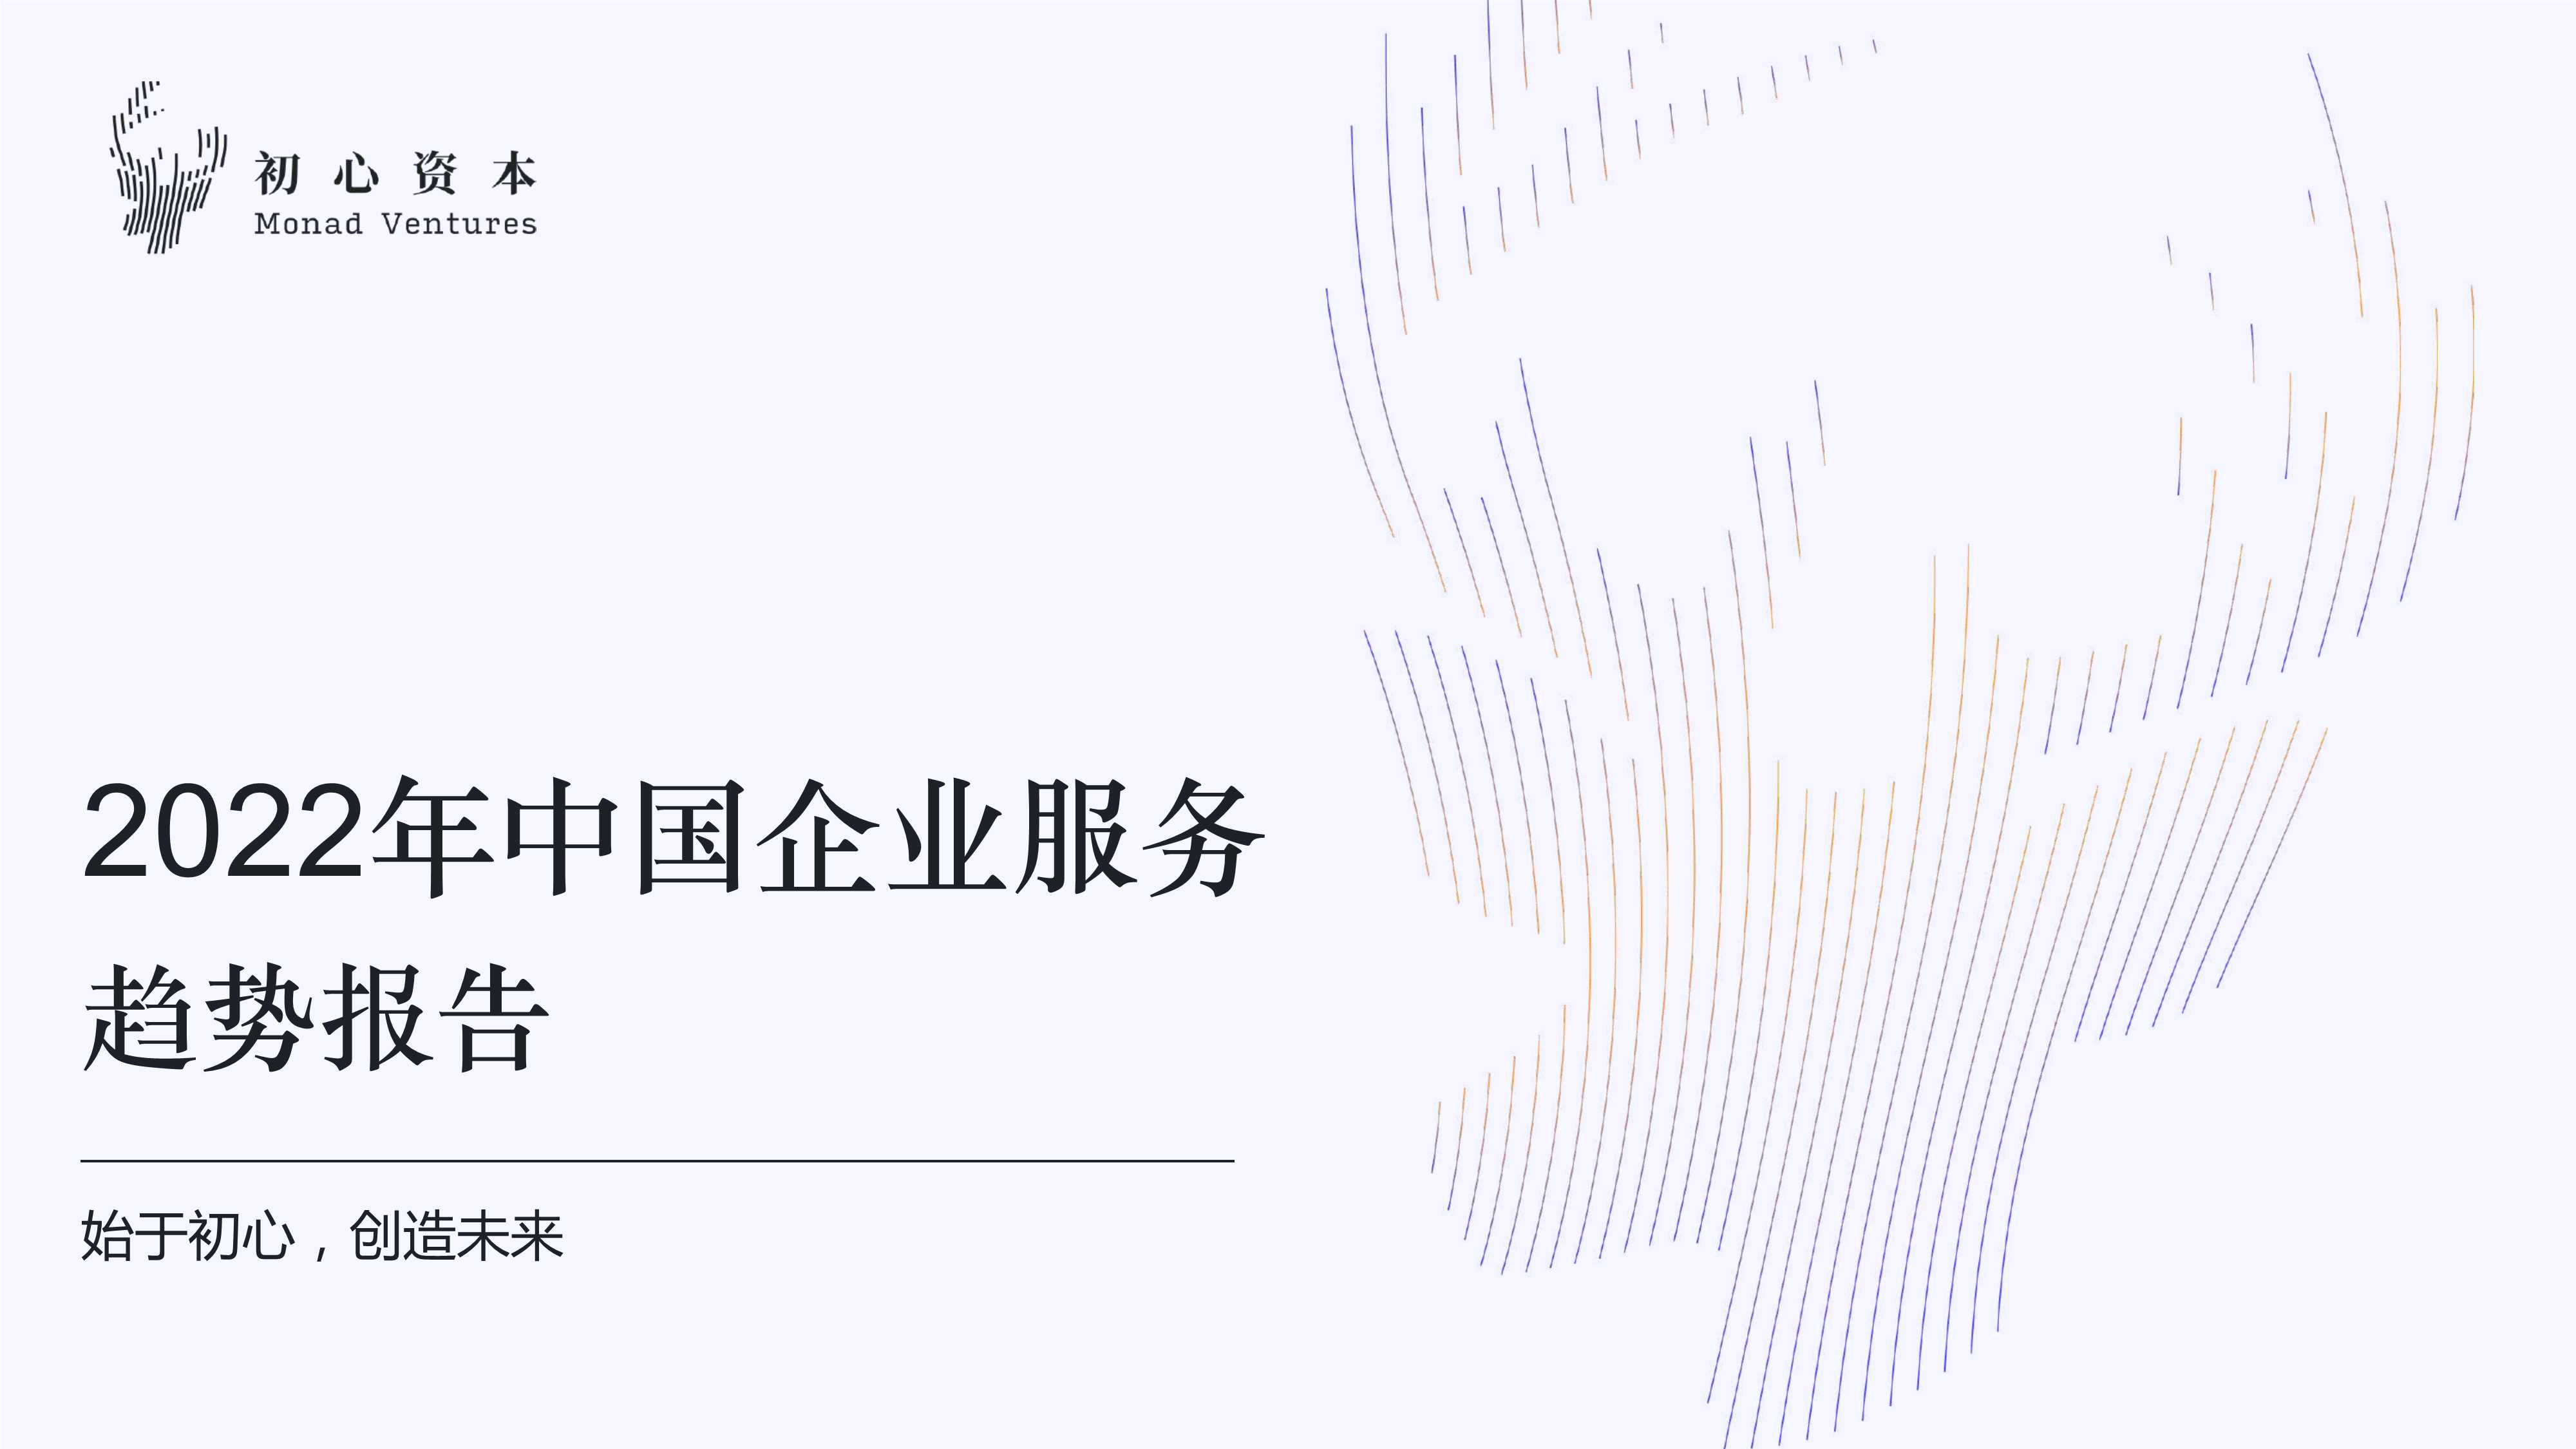 初心资本-2022年中国企业服务趋势报告-2022.05-13页